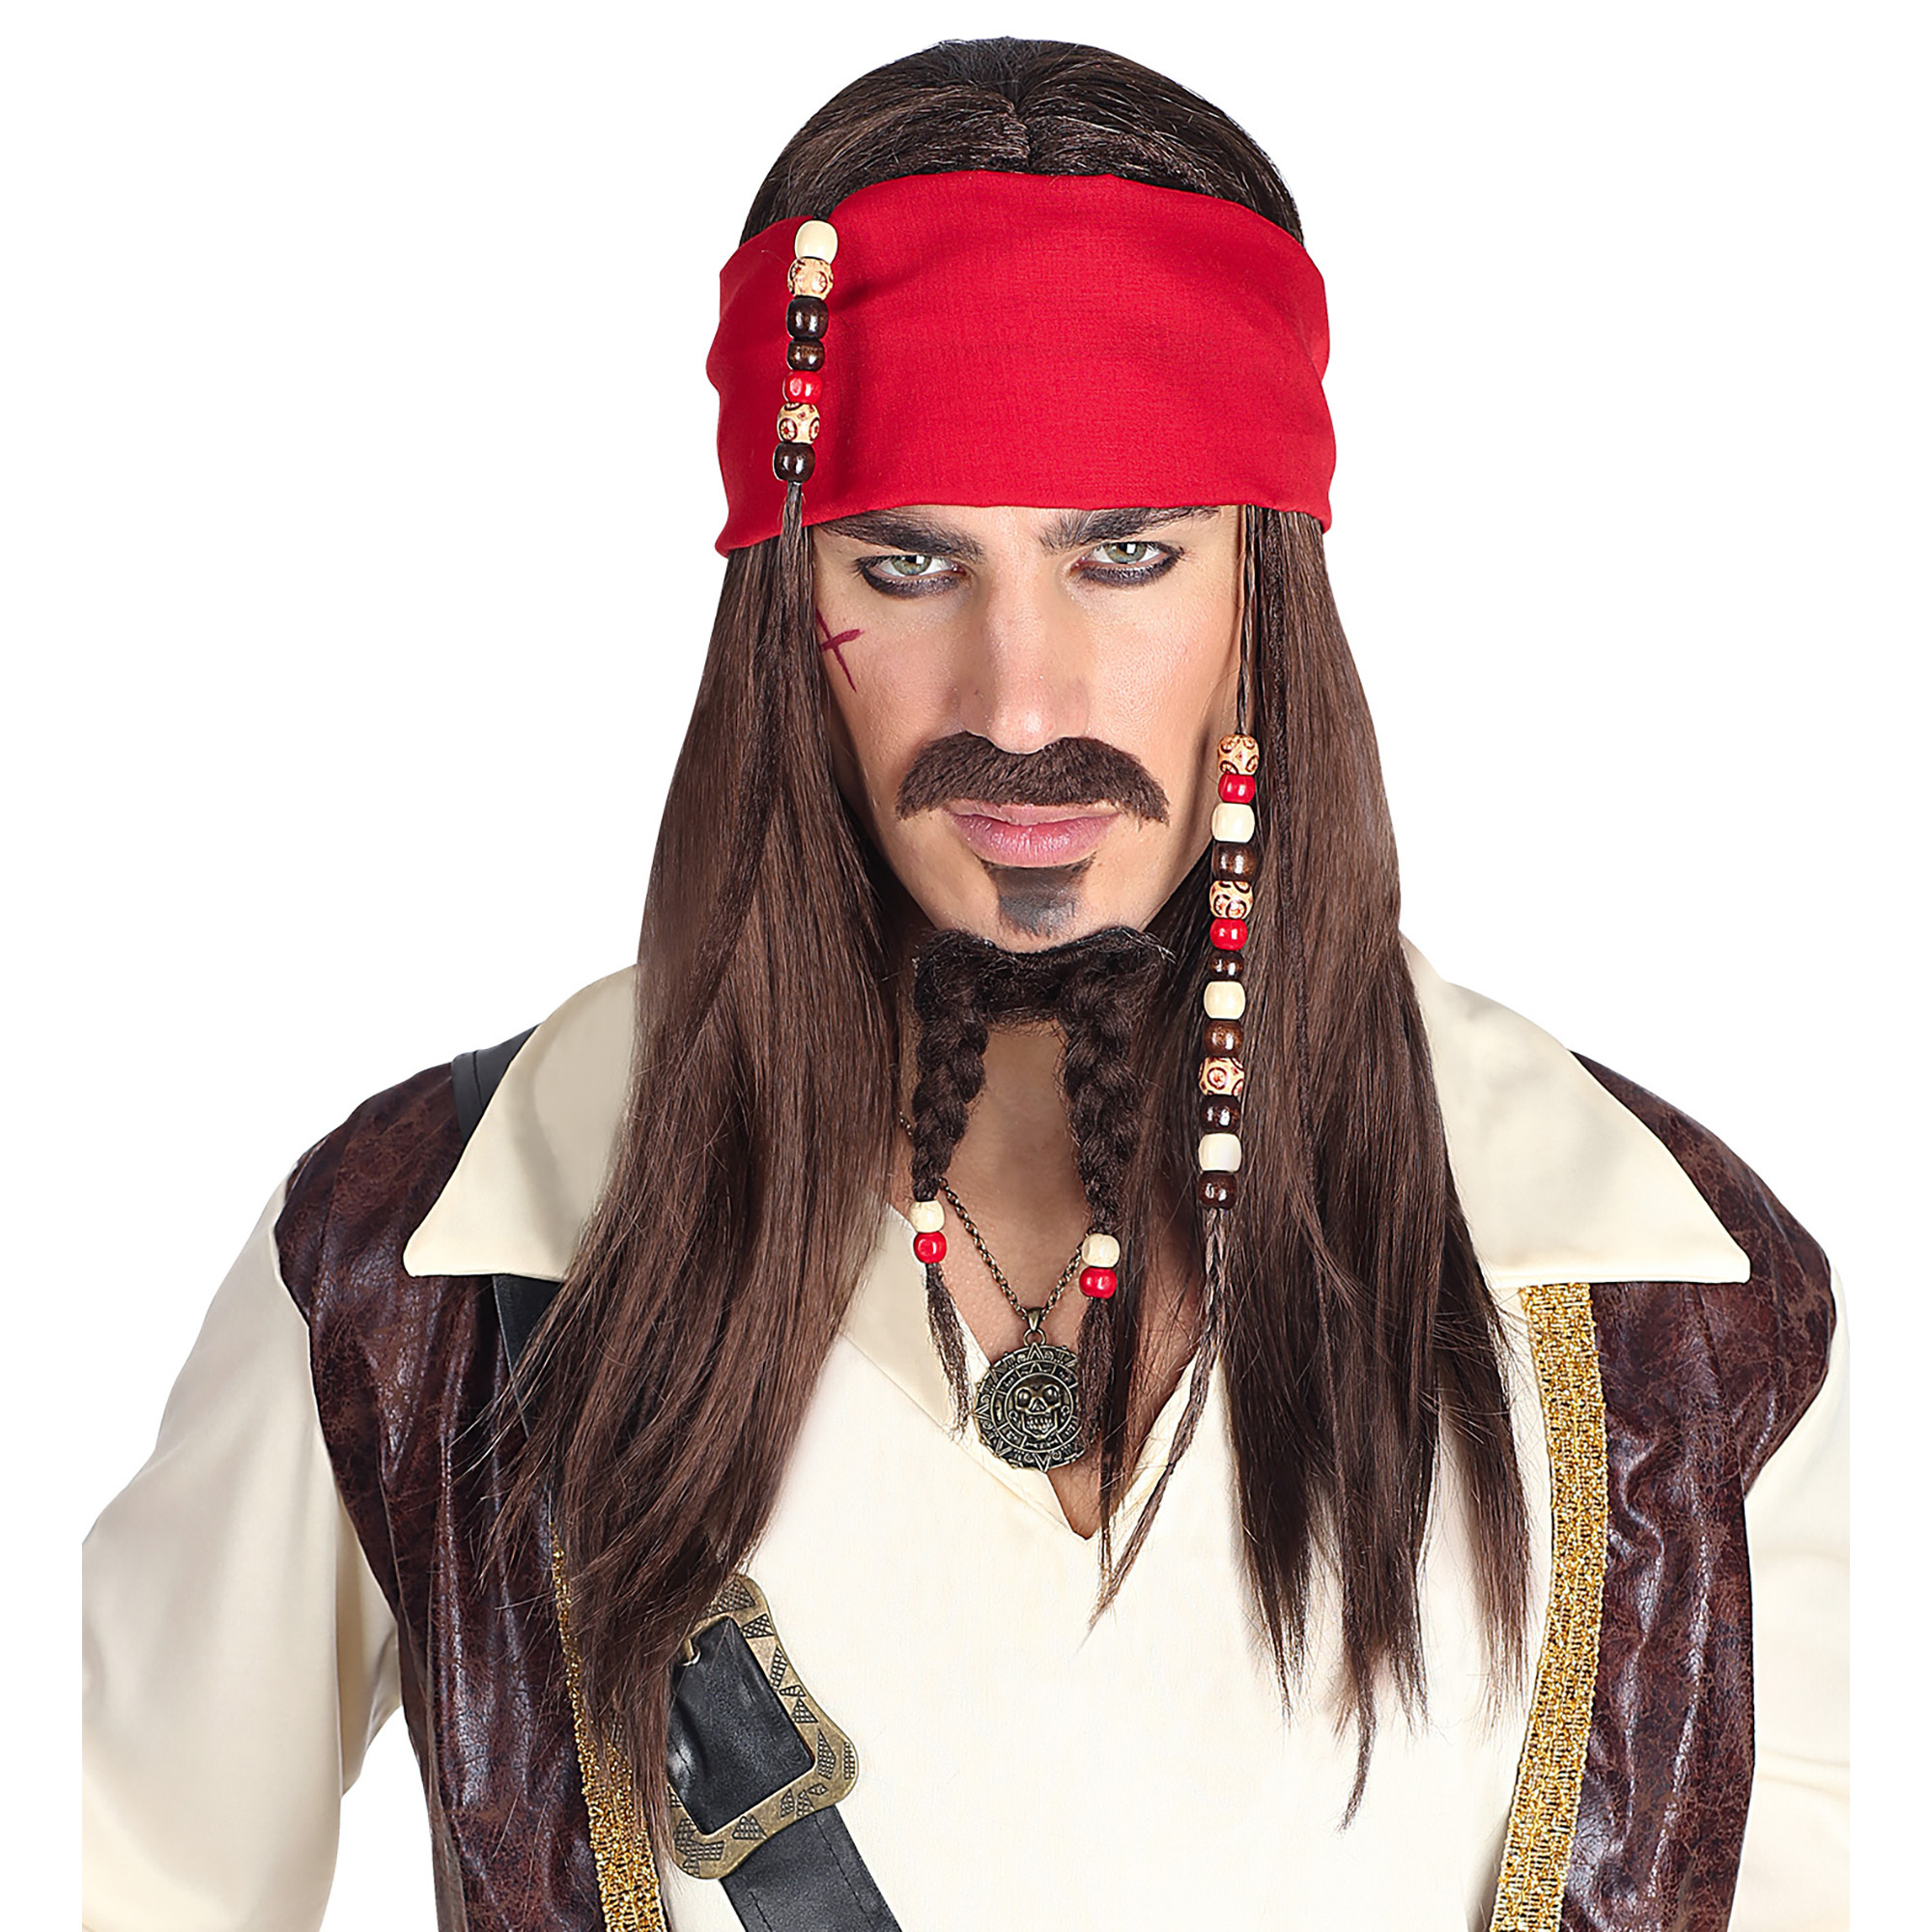 Stoere en ruige piraten pruik voor een echte piraat.